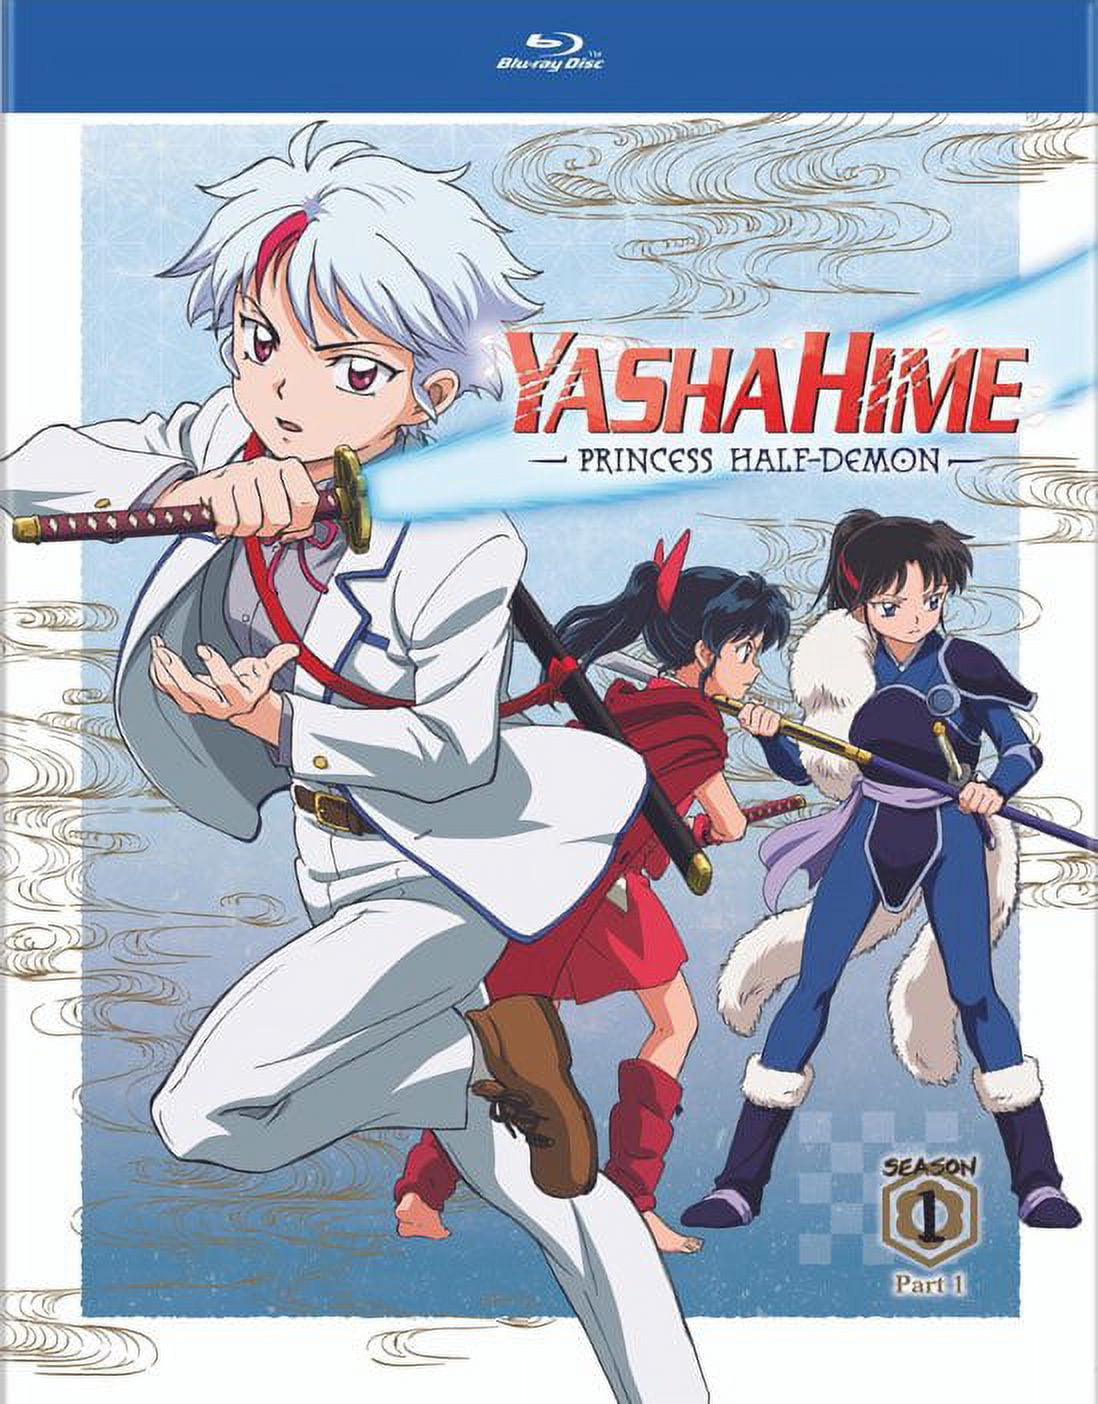 Yashahime: Princess Half-Demon – FORTHRIGHT